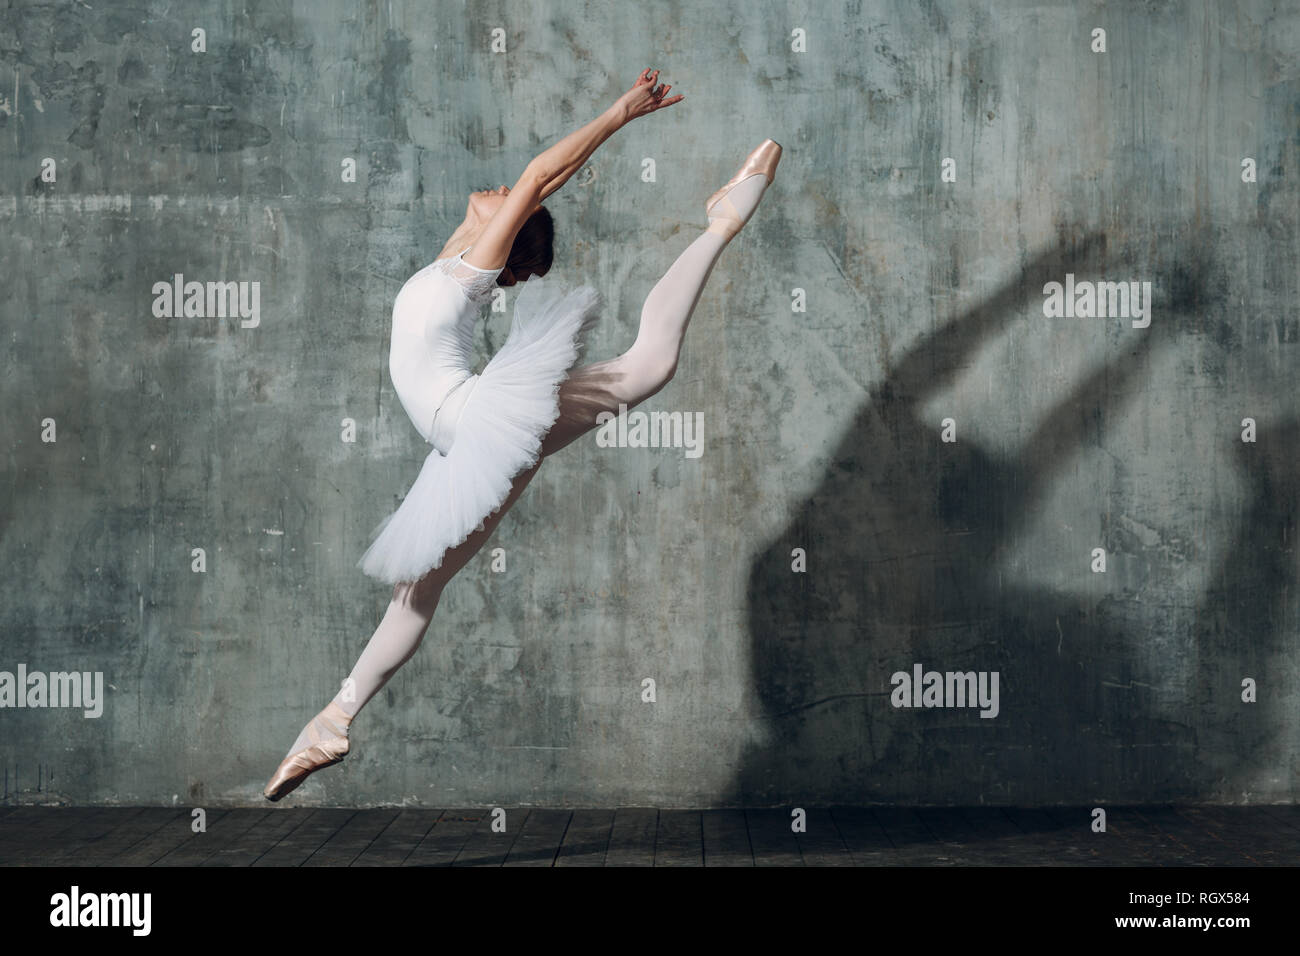 Ballerine saut . Jeune femme belle danseuse de ballet, habillés en tenue professionnelle, pointes et tutu blanc. Banque D'Images